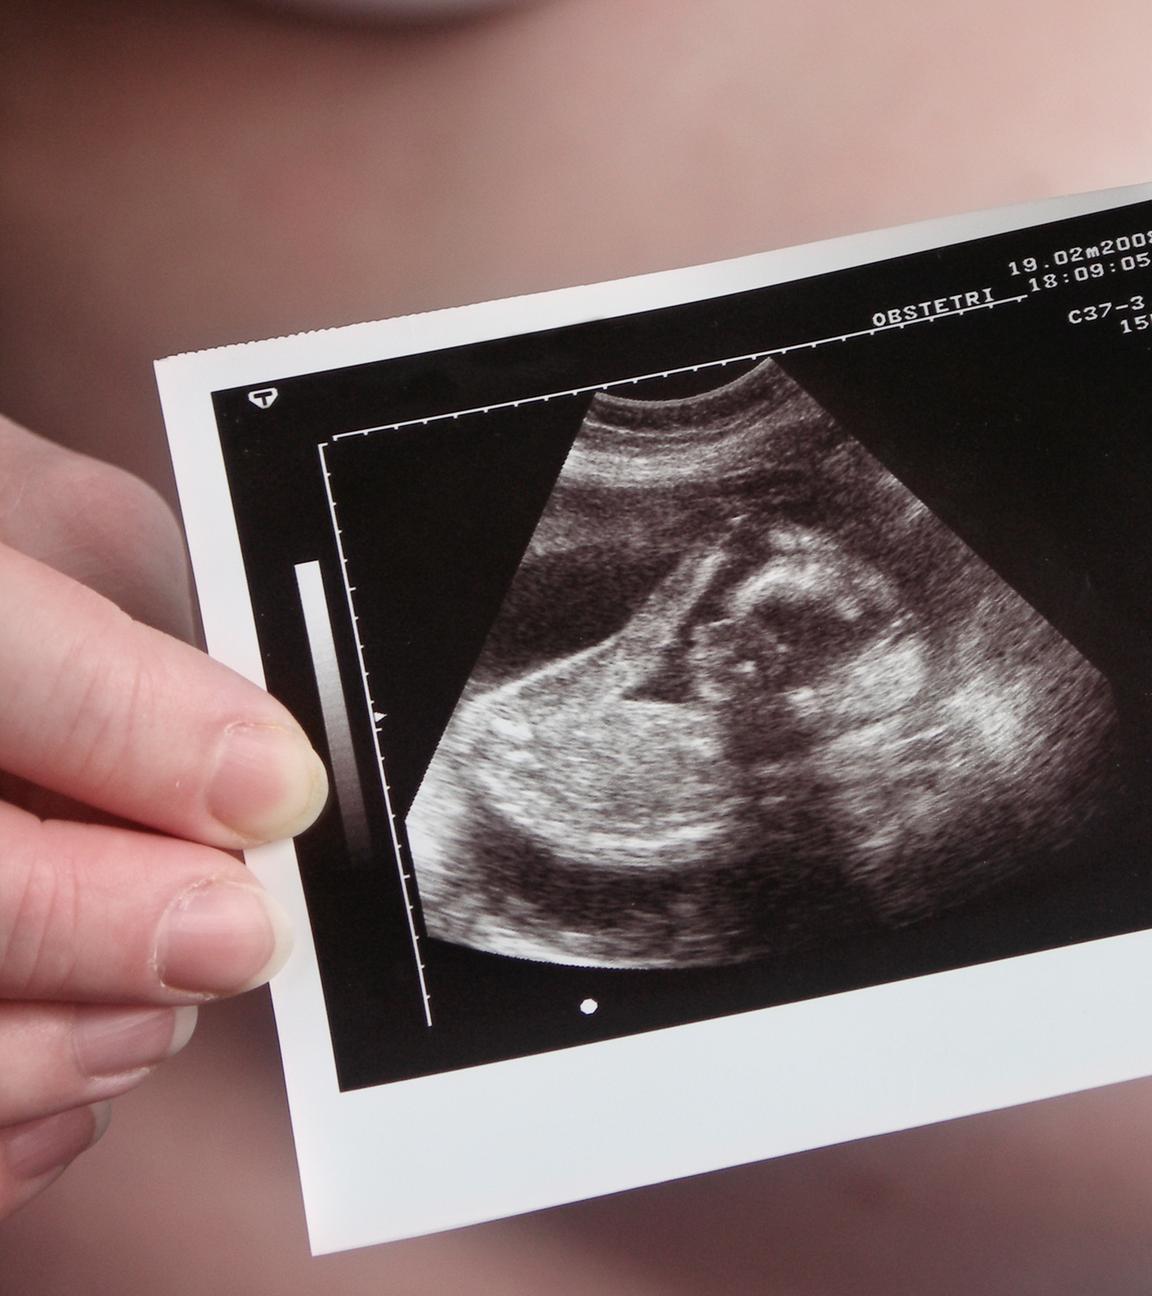 Im Hintergrund sieht man einen Schwangerschaftsbauch, welcher durch ein Ultraschallbild verdeckt wird.